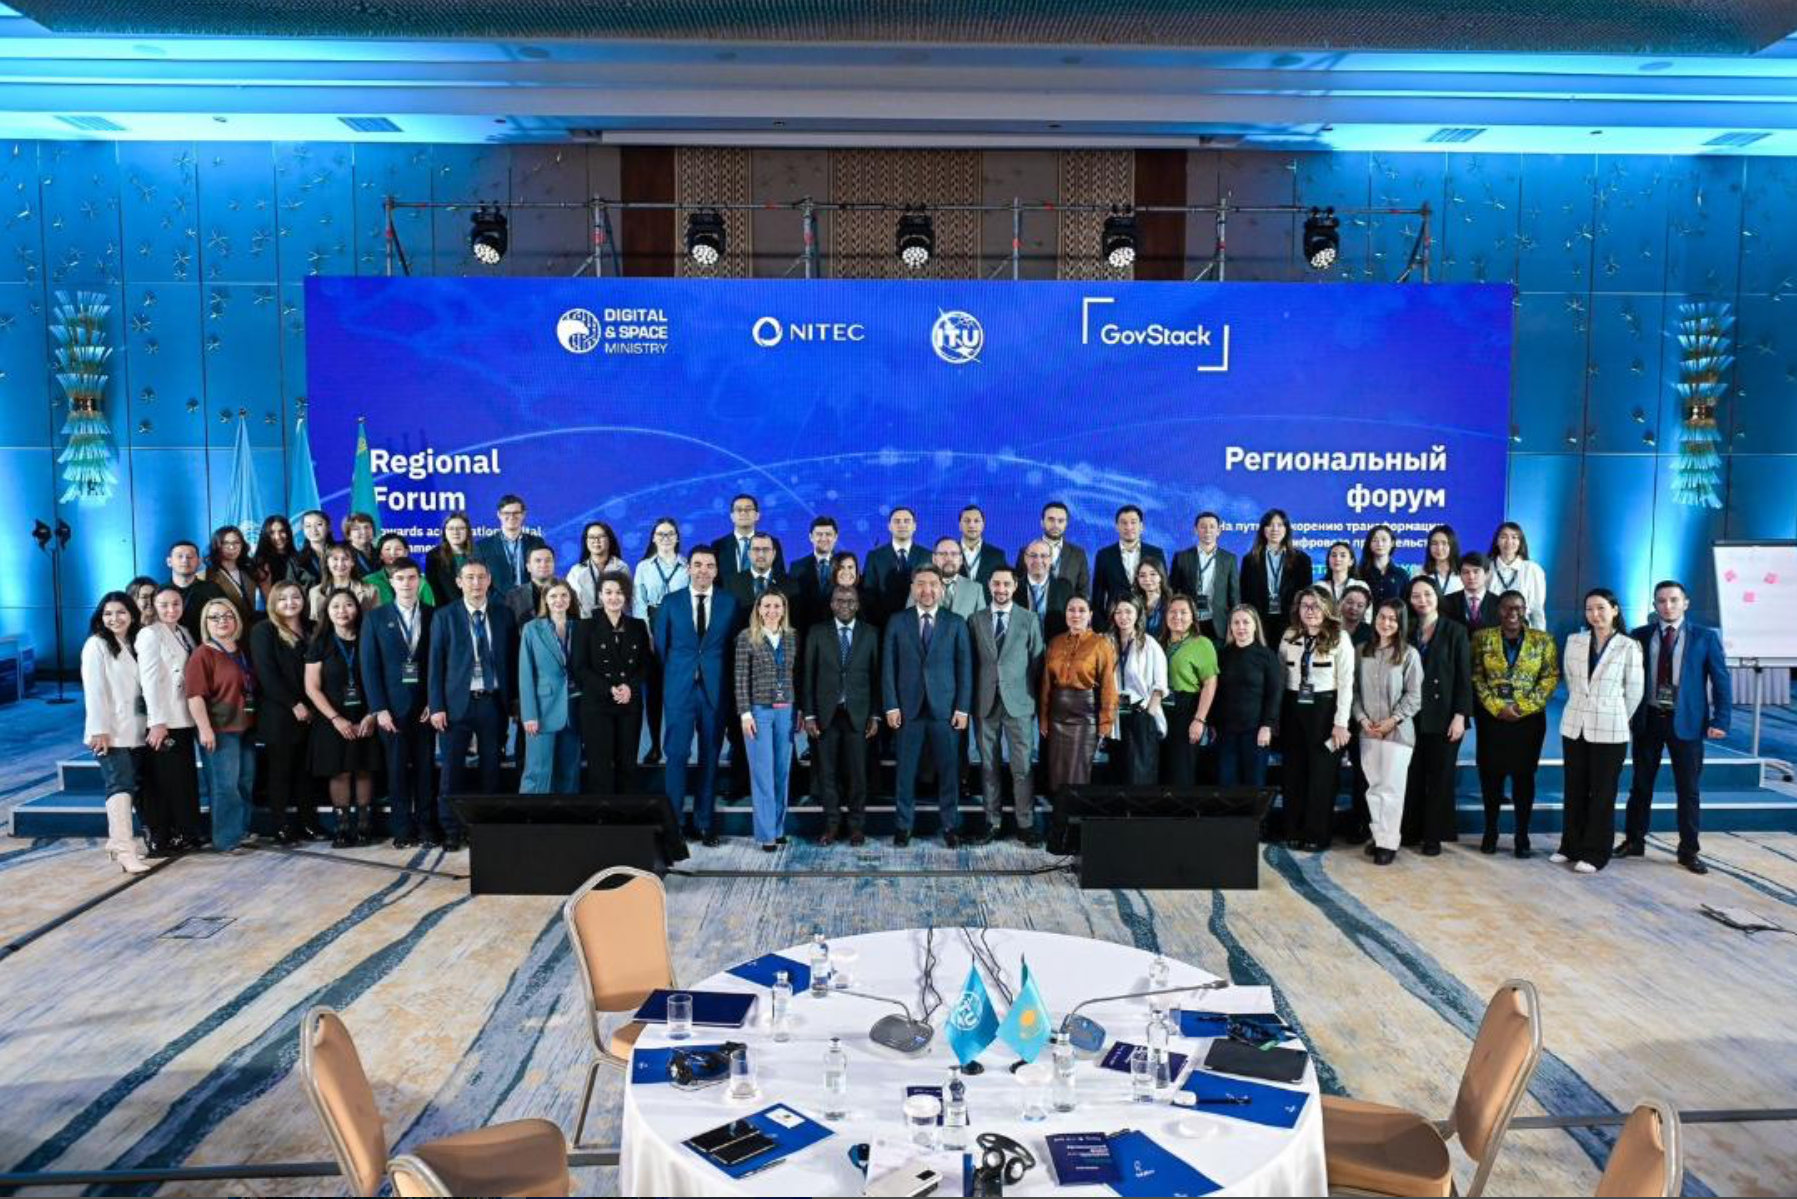 Astana hosts Regional GovStack Forum, driving digital governance in CIS region